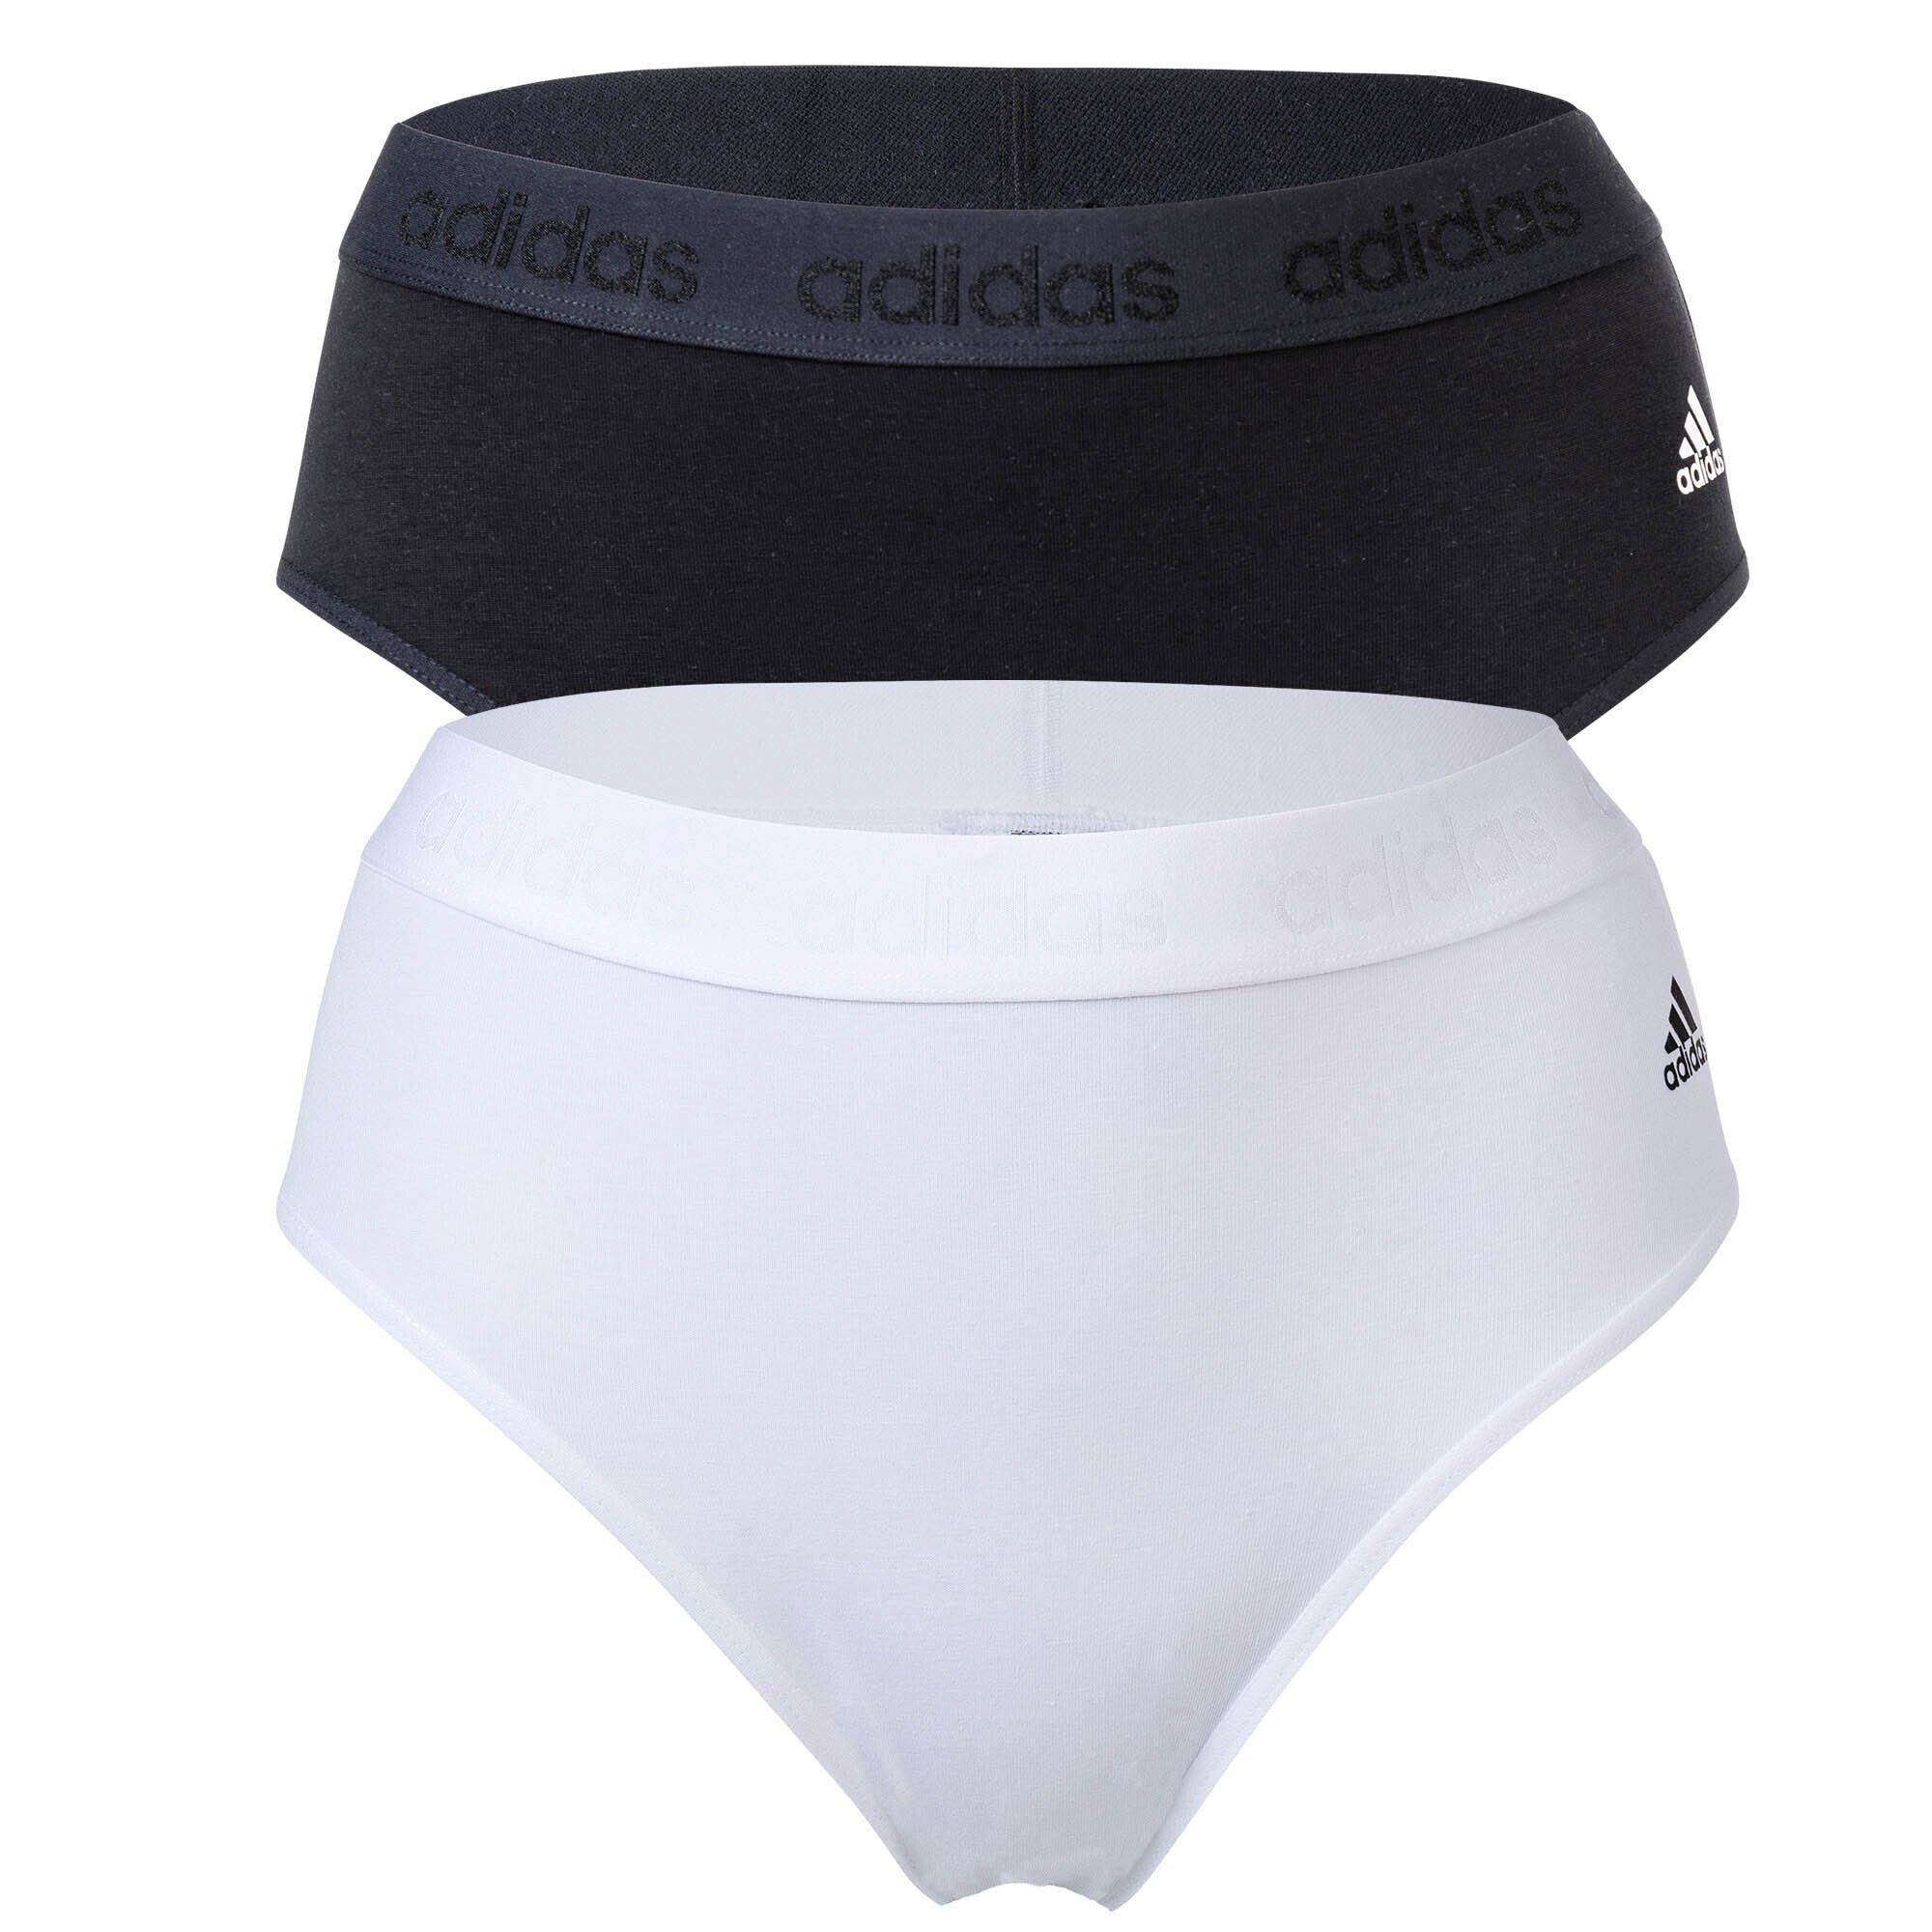 Slip, Sportswear adidas Pack Smart Slip 2er Slip, - Cotton Damen Schwarz/Weiß Bikini